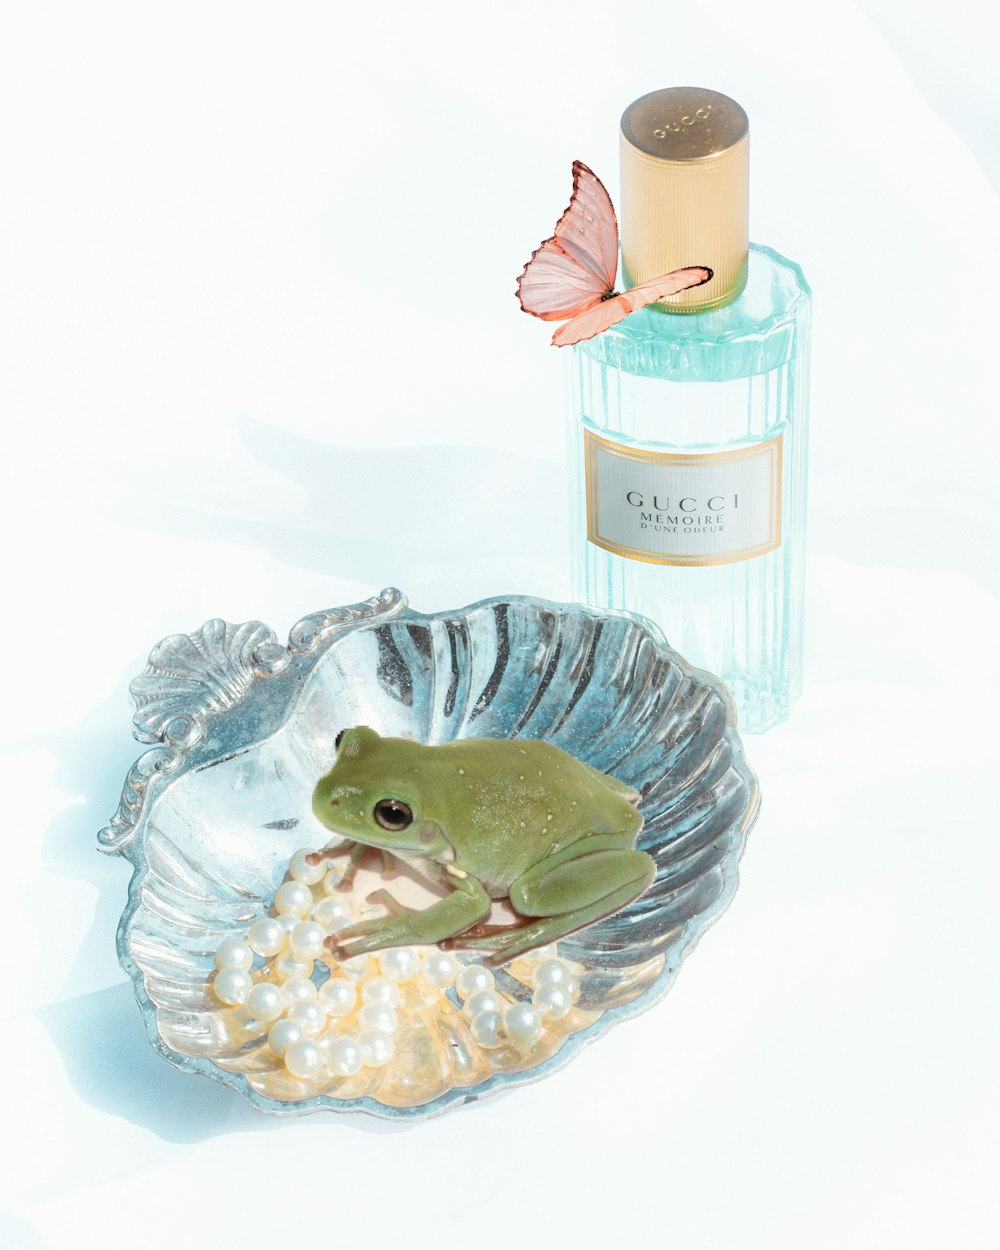 Foto figurilla de rana verde al lado de una botella rosa y blanca – Imagen  Rana gratis en Unsplash